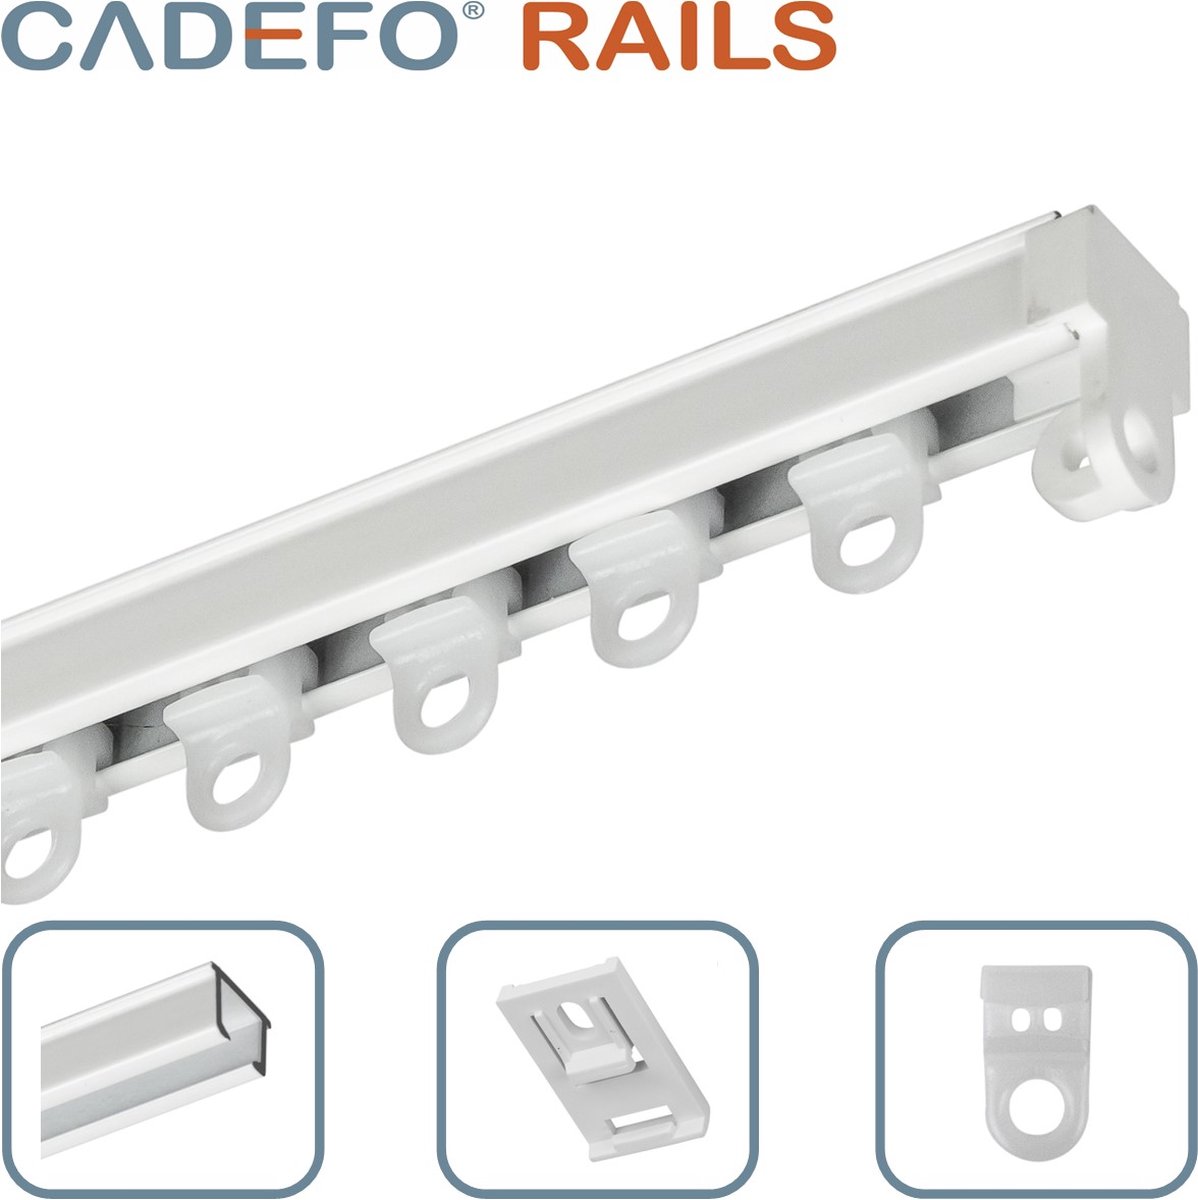 CADEFO RAILS (151 - 200 cm) Gordijnrails - Compleet op maat! - UIT 1 STUK - Leverbaar tot 6 meter - Plafondbevestiging - Lengte 190 cm